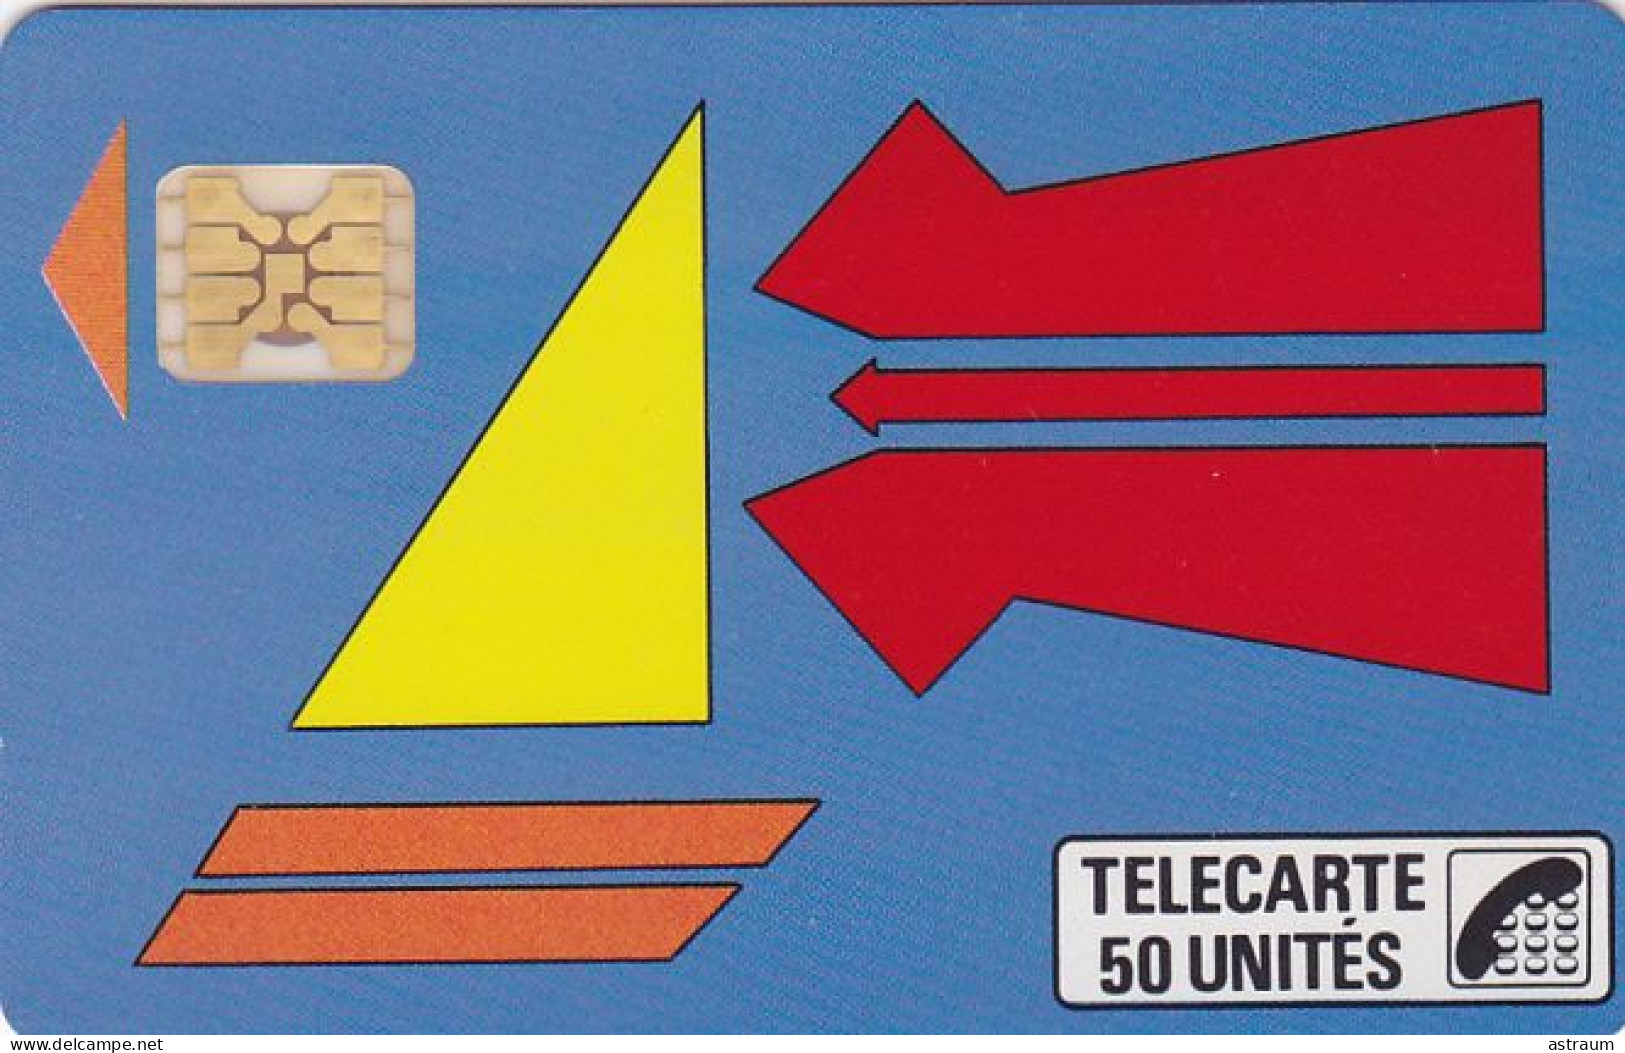 Telecarte Privée D96 NEUVE - Quilfen Location - 1000 Ex - Sc4ob - 50 Un - 1989 - Privat